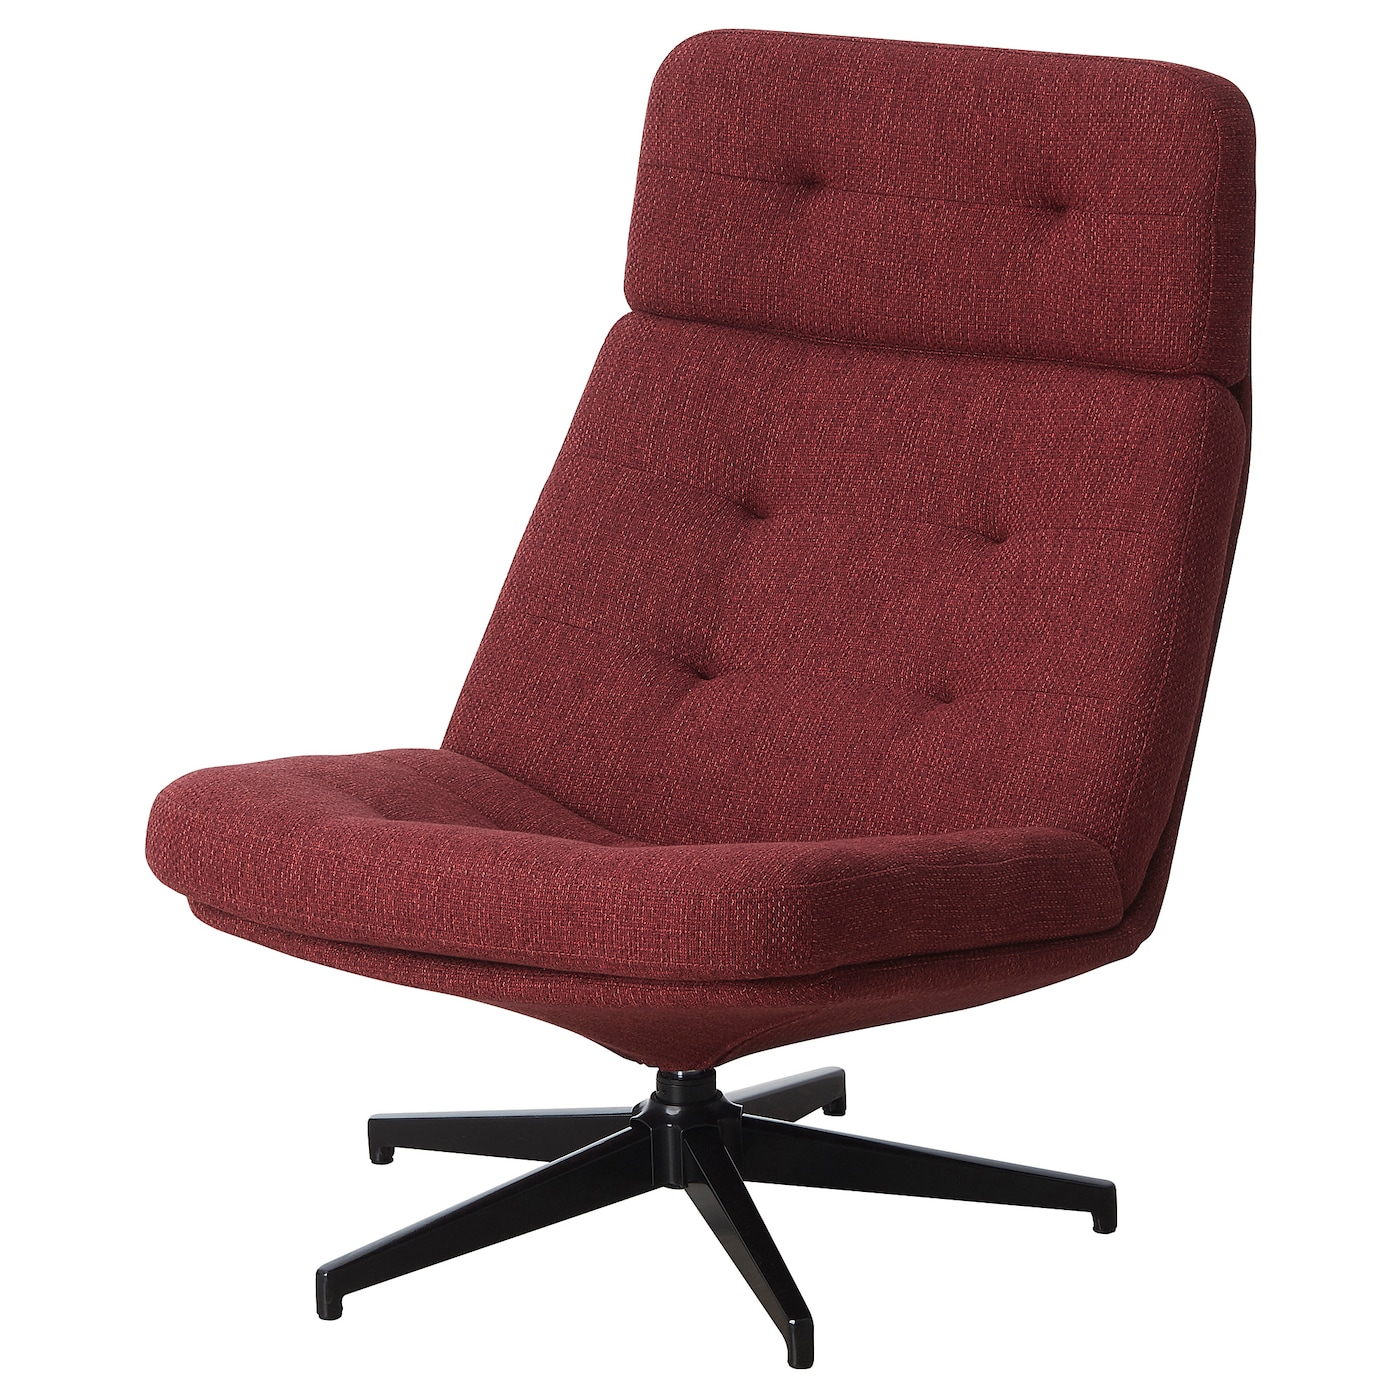 ХАВБЕРГ Вращающееся кресло, Лейде красно-коричневый HAVBERG IKEA вращающееся кресло раскладное